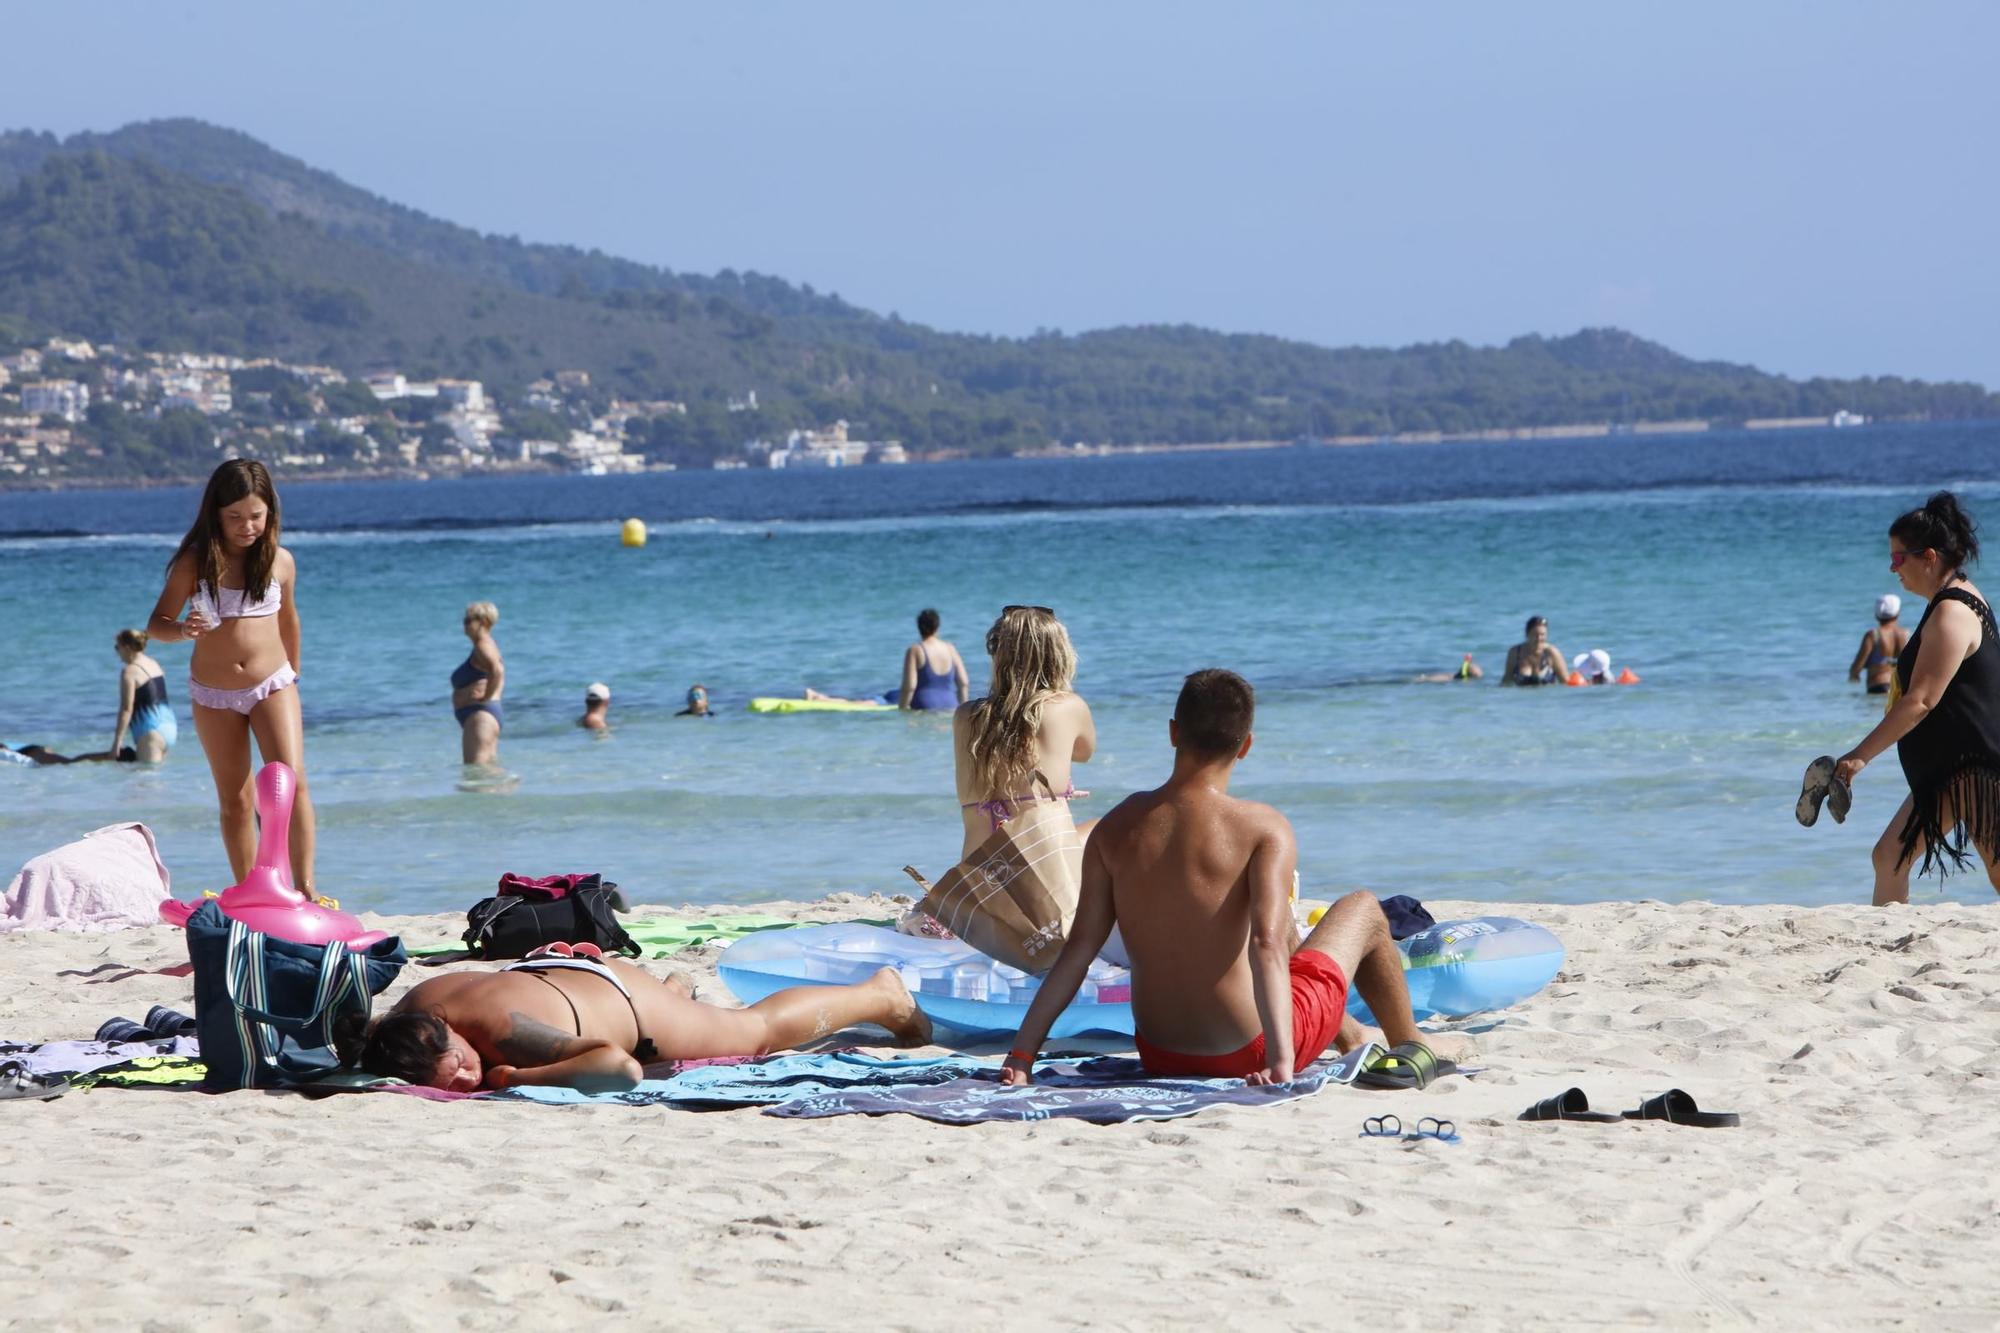 Sommer-Urlaub im Oktober: So sieht es derzeit am Strand von Alcúdia auf Mallorca aus